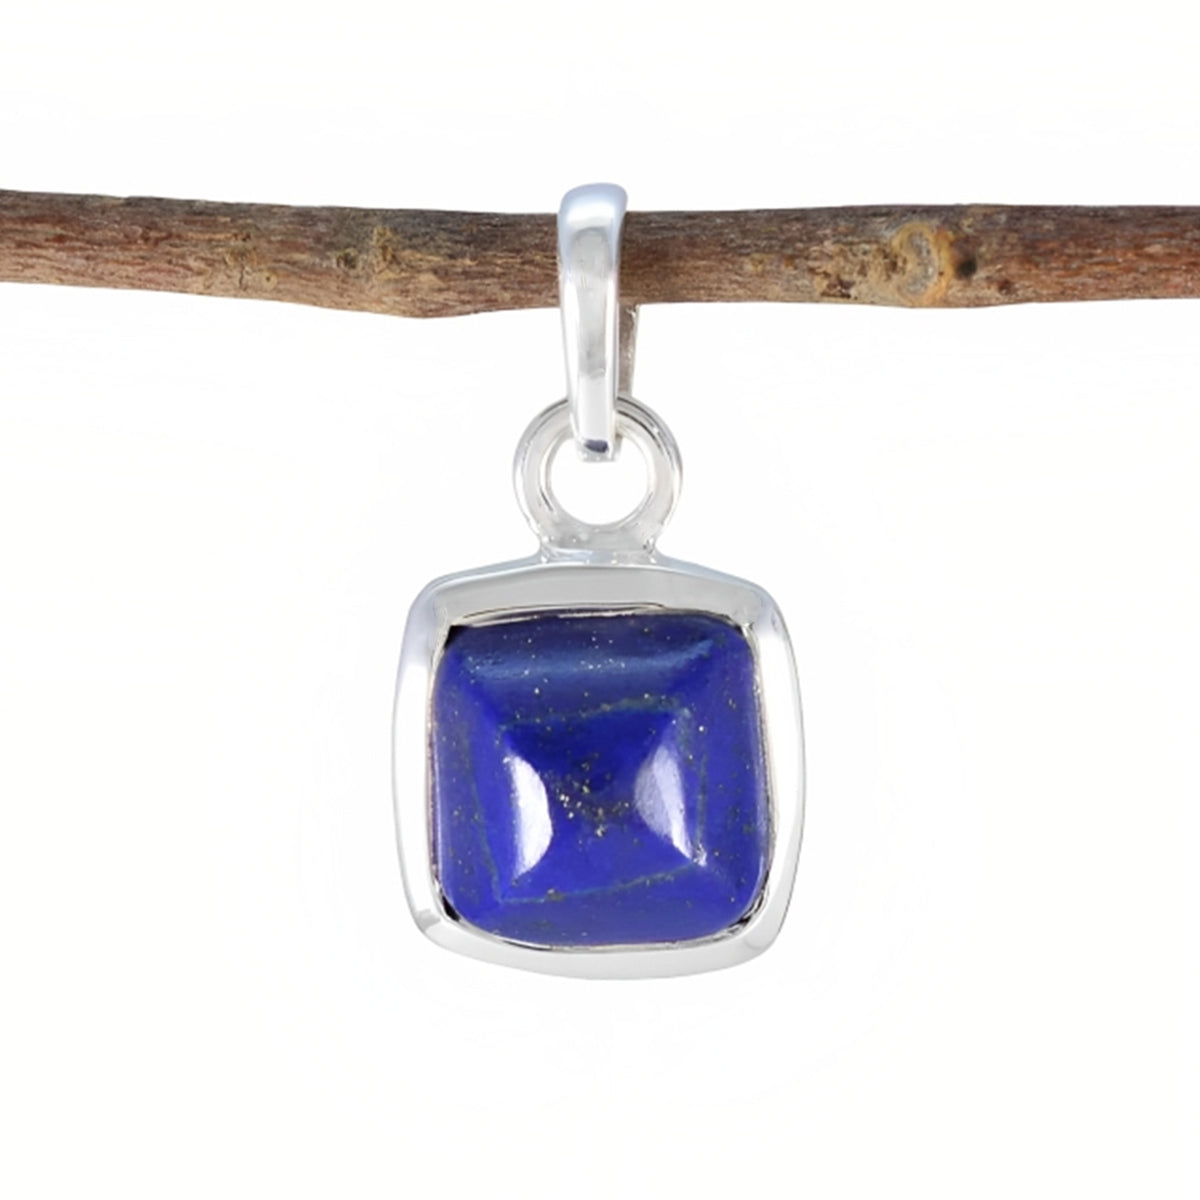 Riyo véritable pierre précieuse carrée à facettes nevy bleu lapis lazuli pendentif en argent sterling cadeau pour un ami